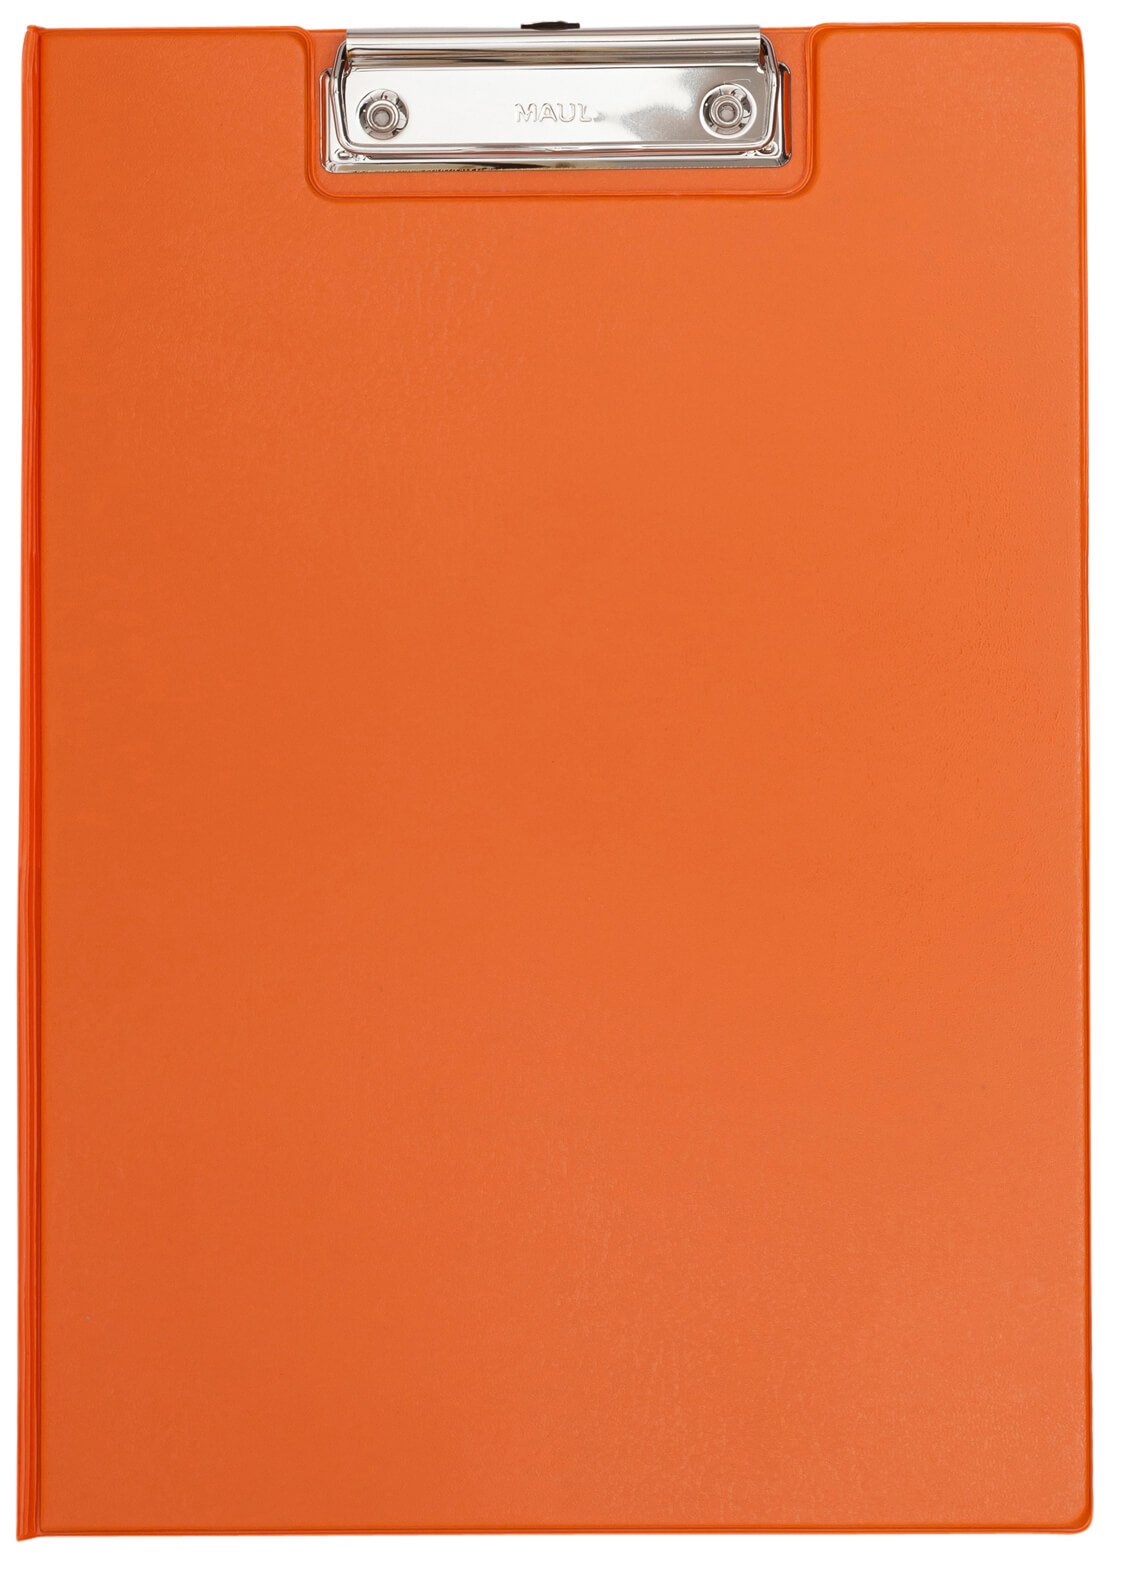 A4 Schreibmappe mit Folien- überzug, orange